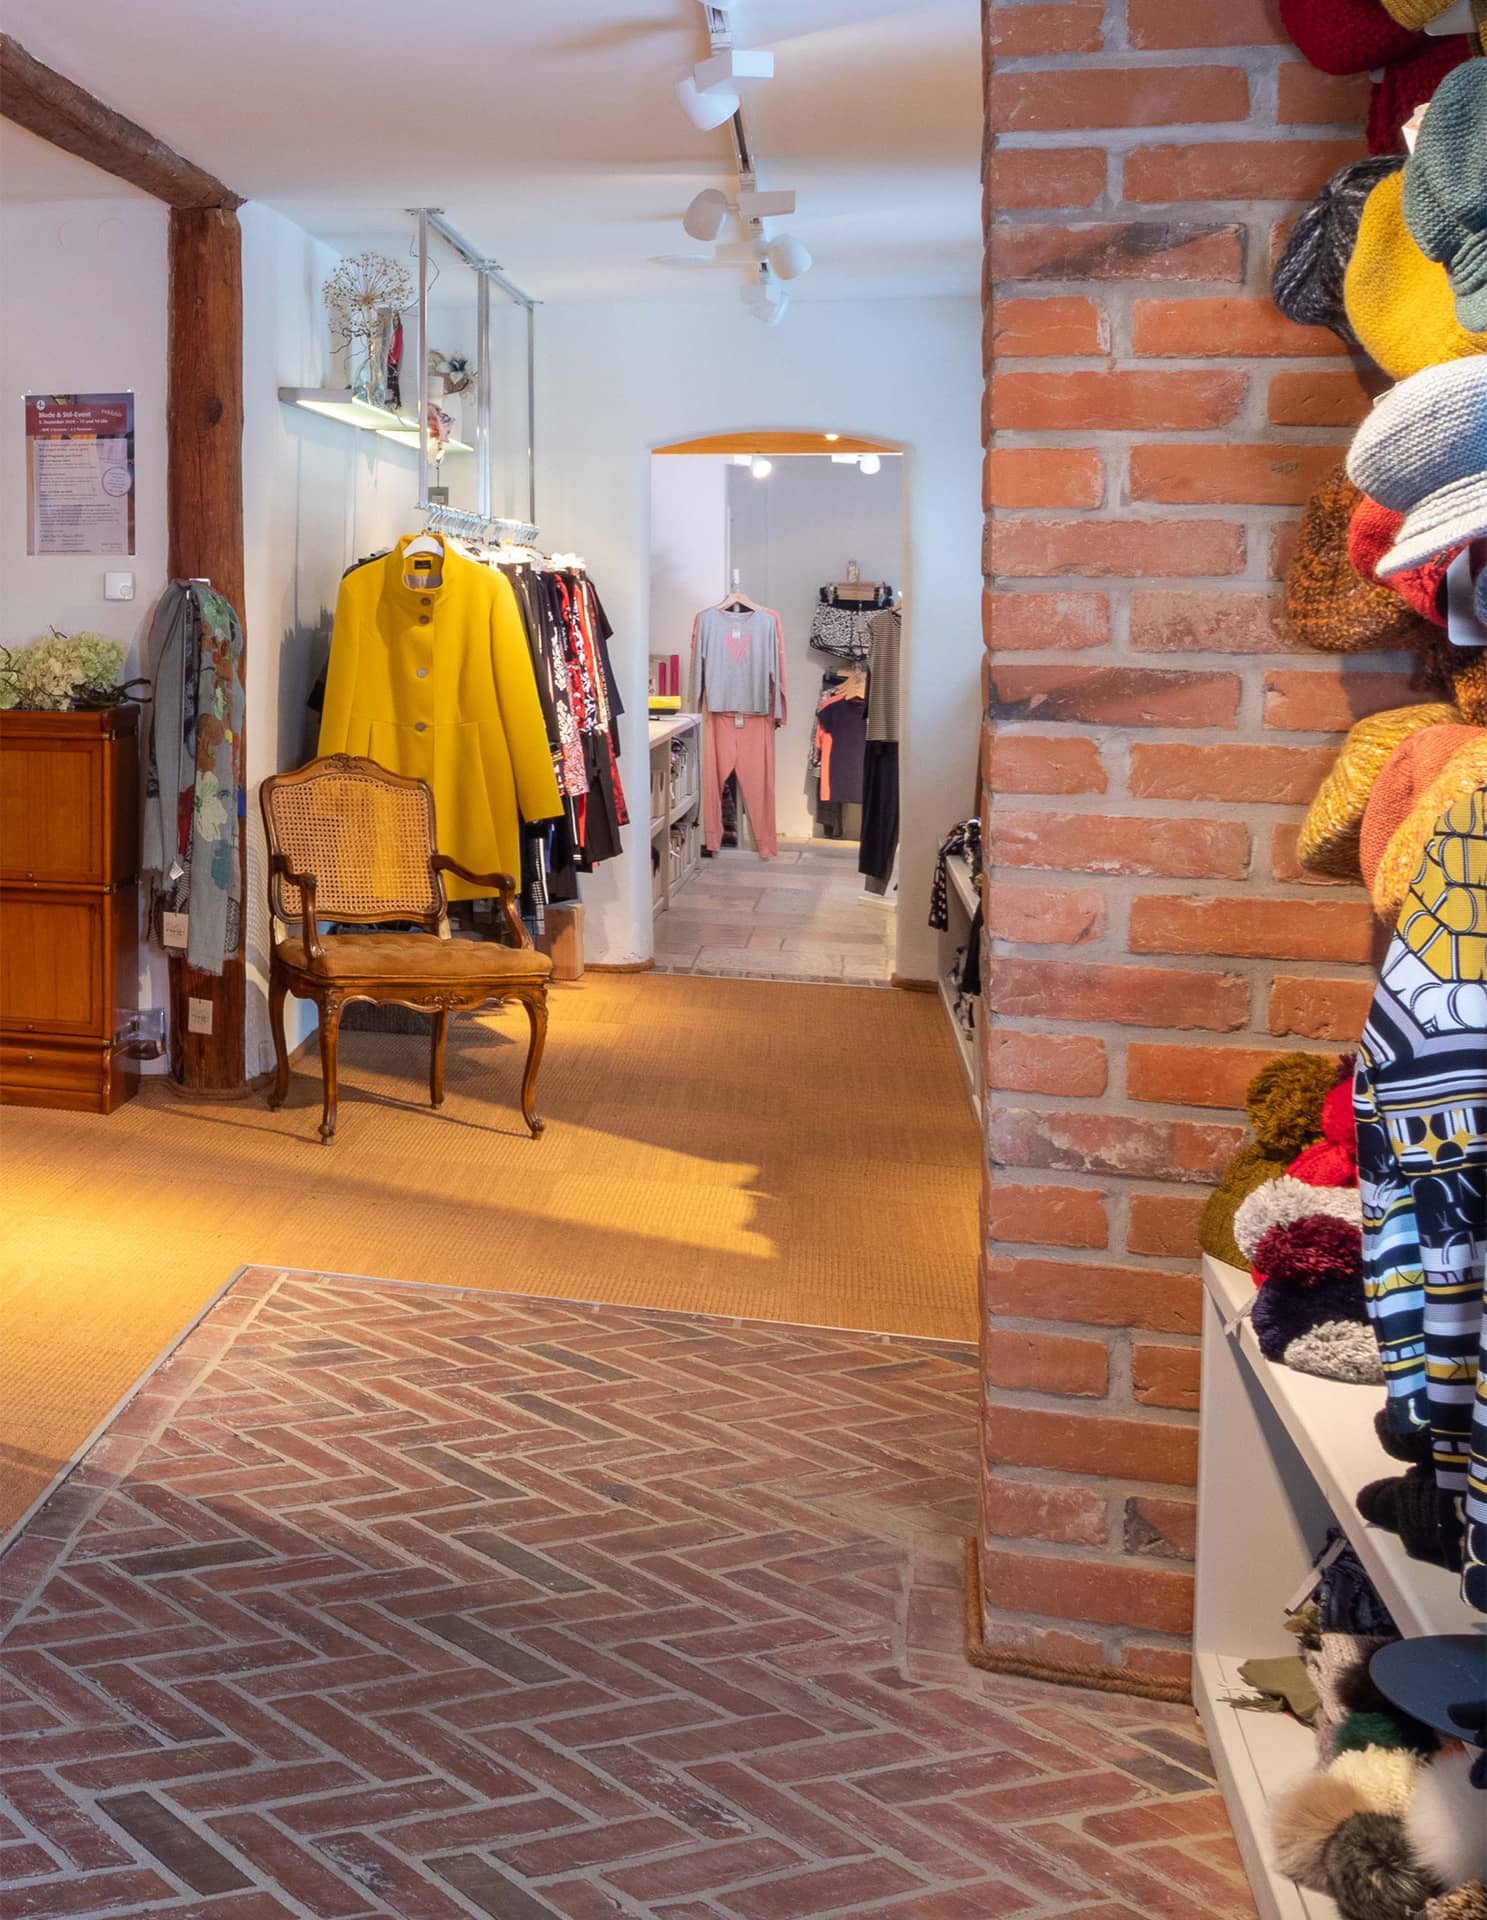 Ambientefoto: Blick in die Apart Boutique  mit gemauerter Wand und modischer Kleiderauswahl